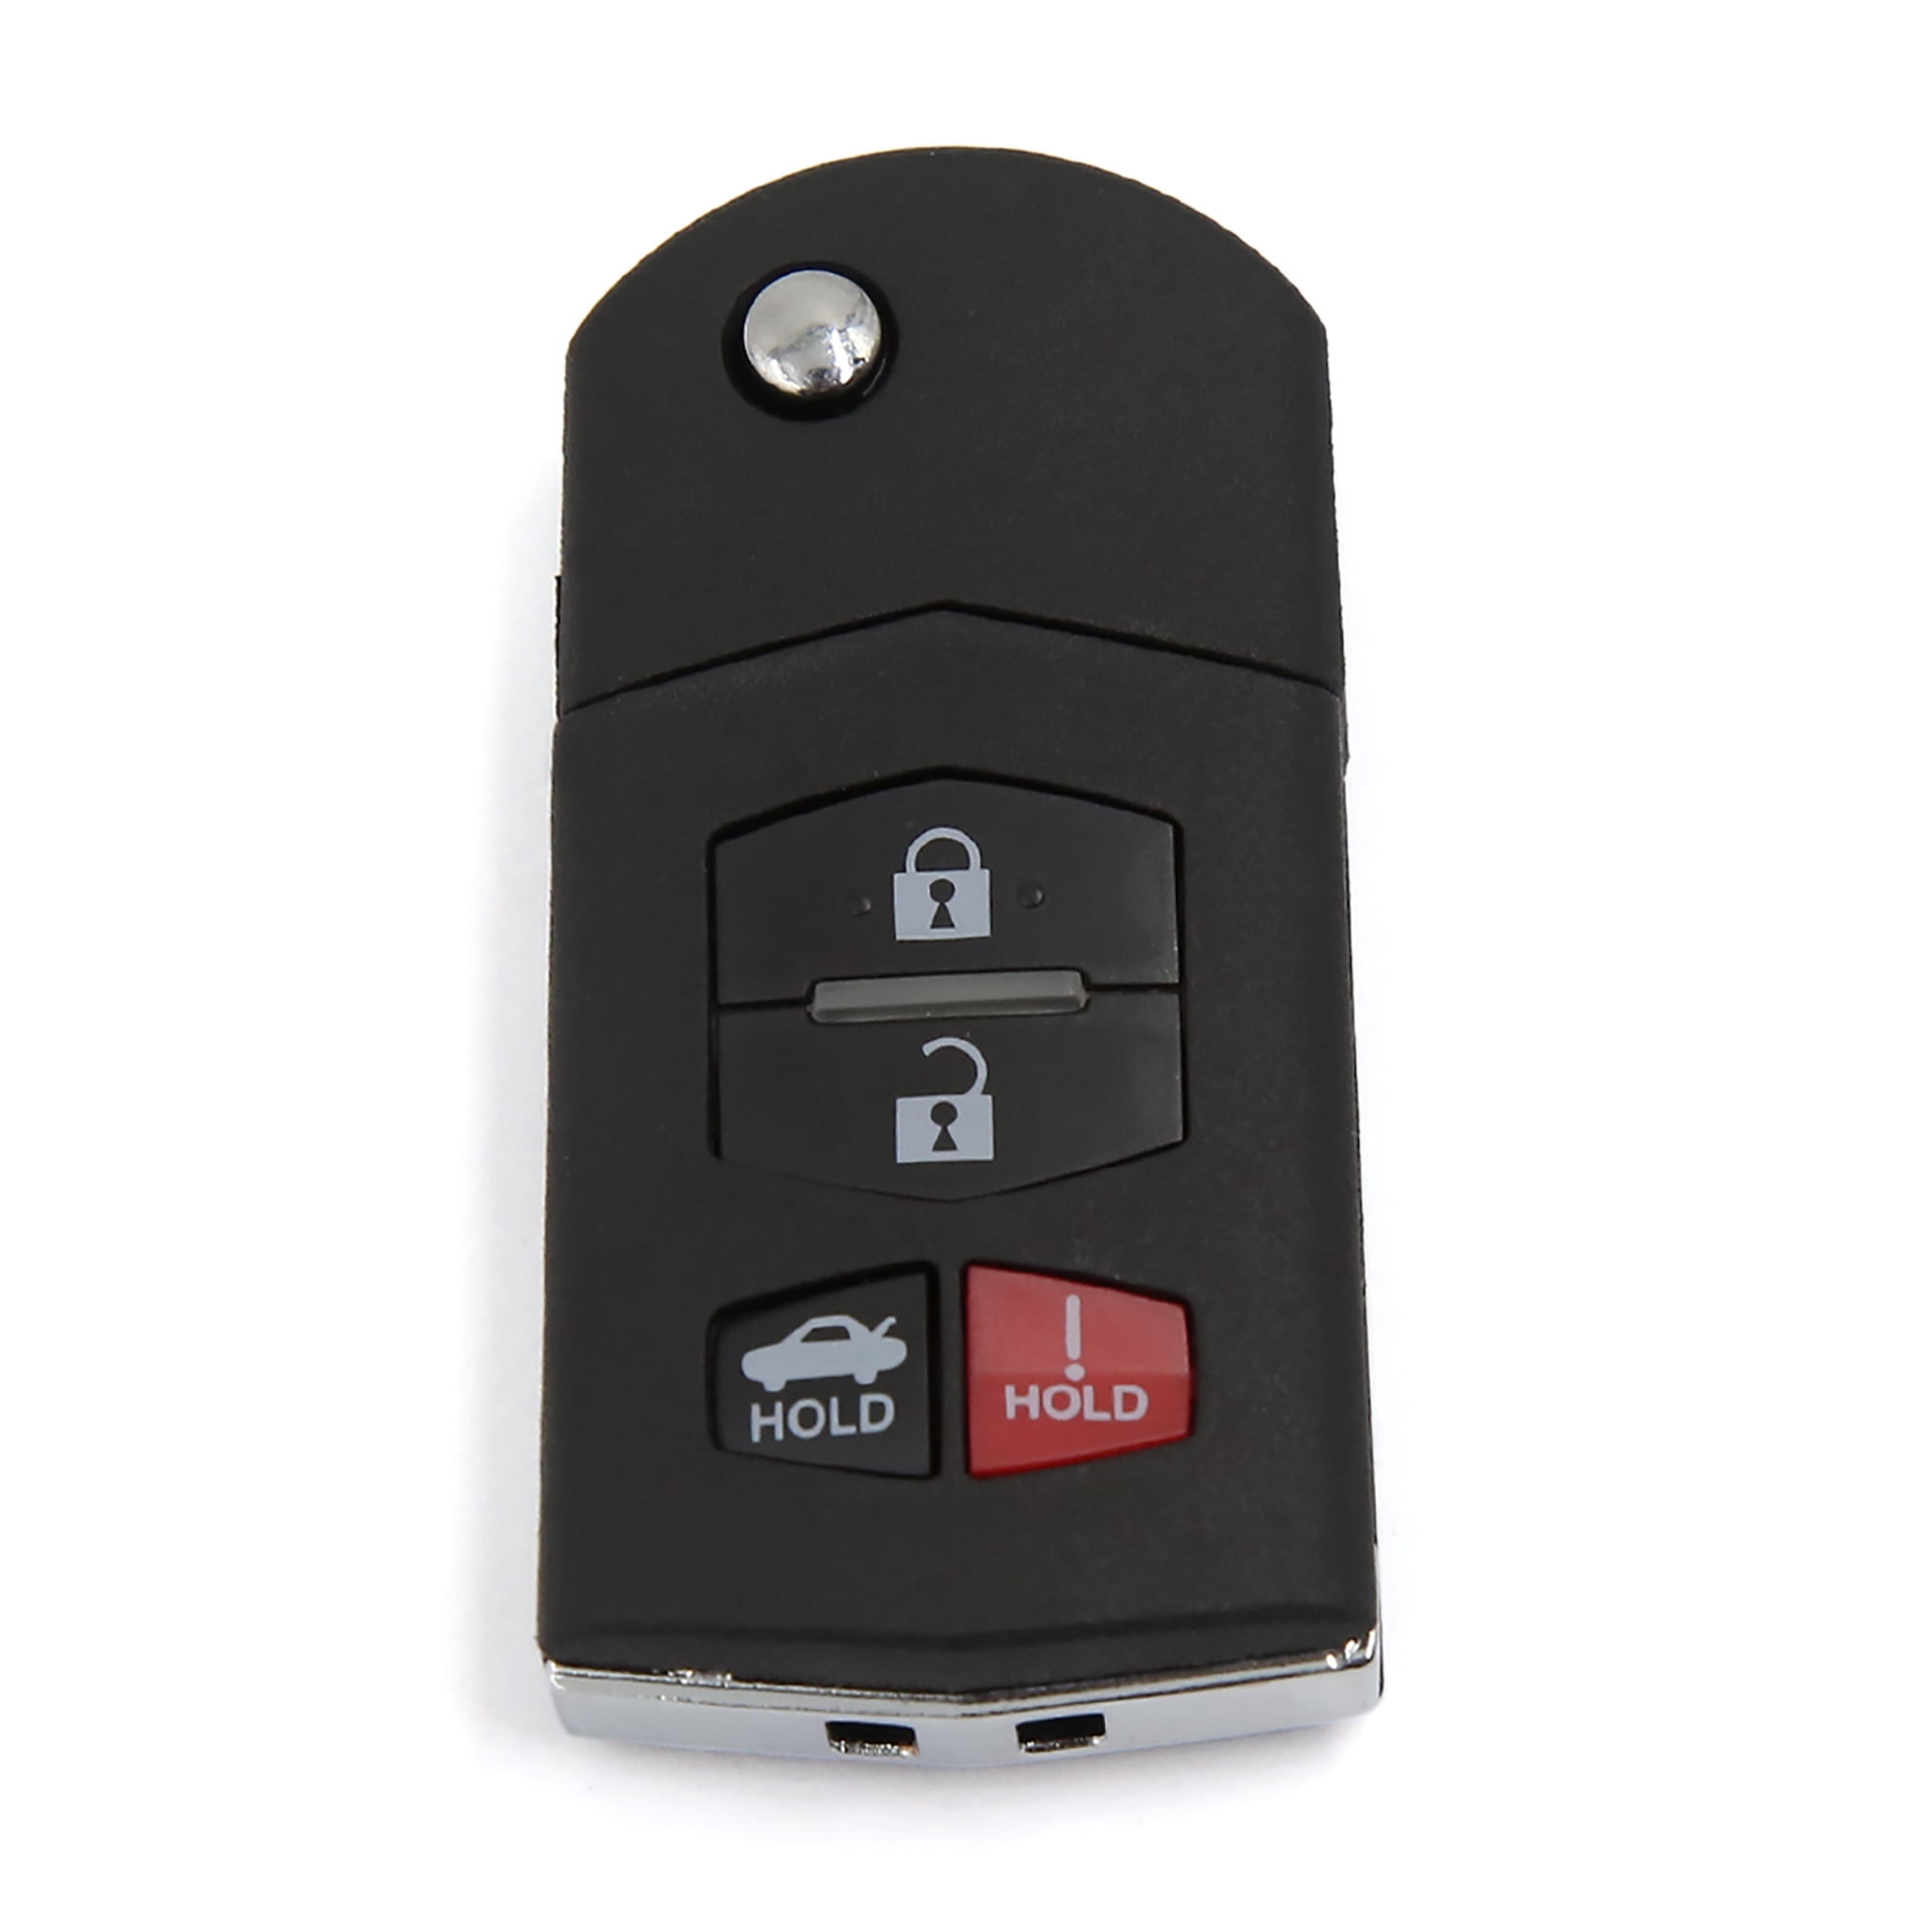 New Keyless Entry Remote Car Flip Key Fob Head for Mazda KPU41788 BGBX1T478 